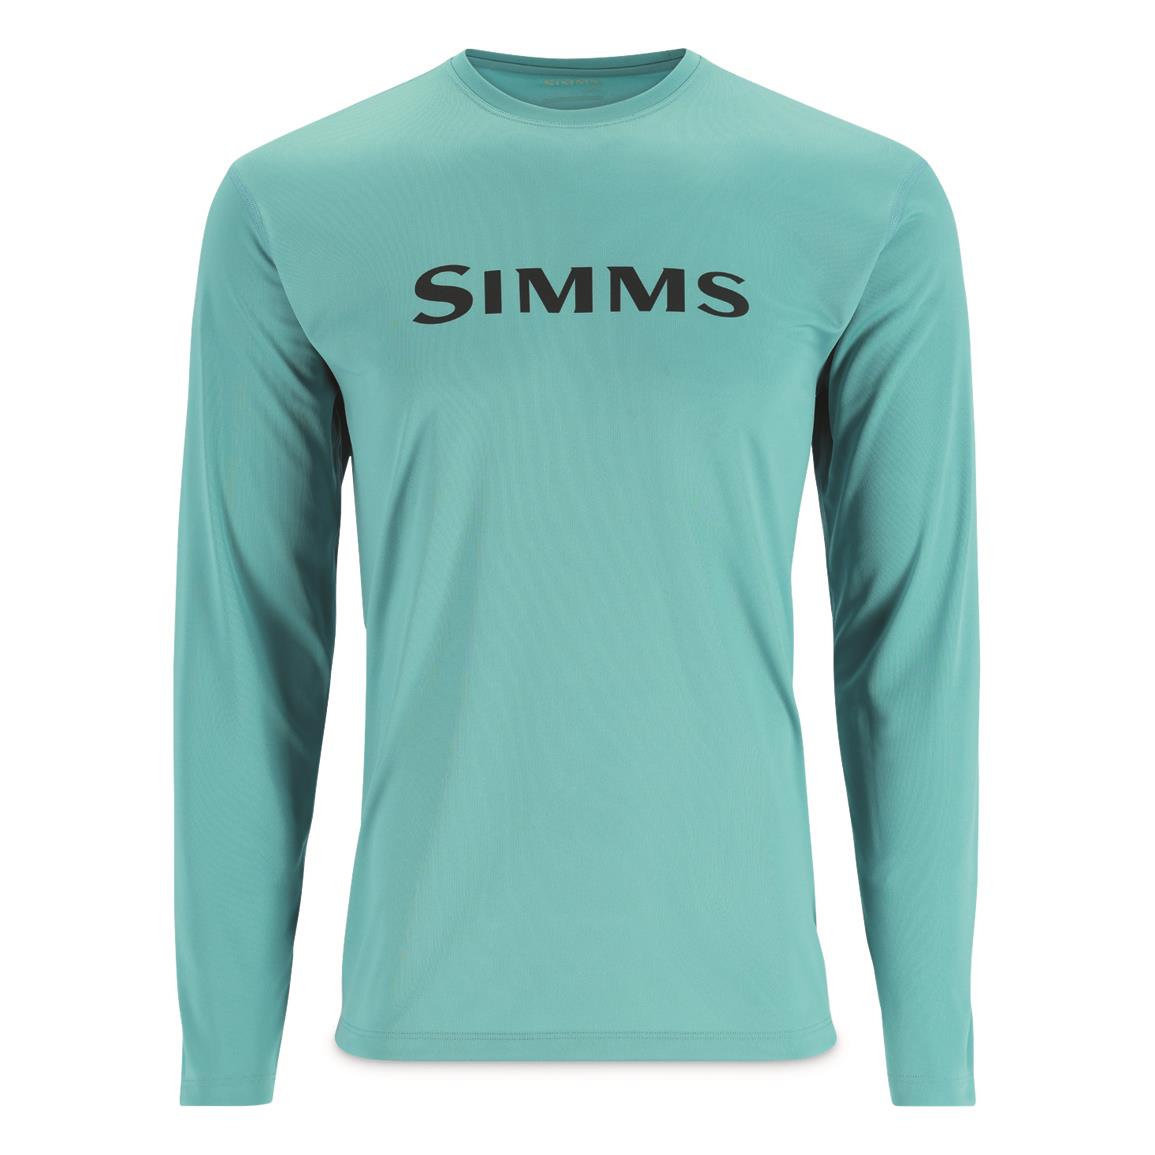 Simms Men's Tech Long-Sleeved Shirt, Gulf Blue